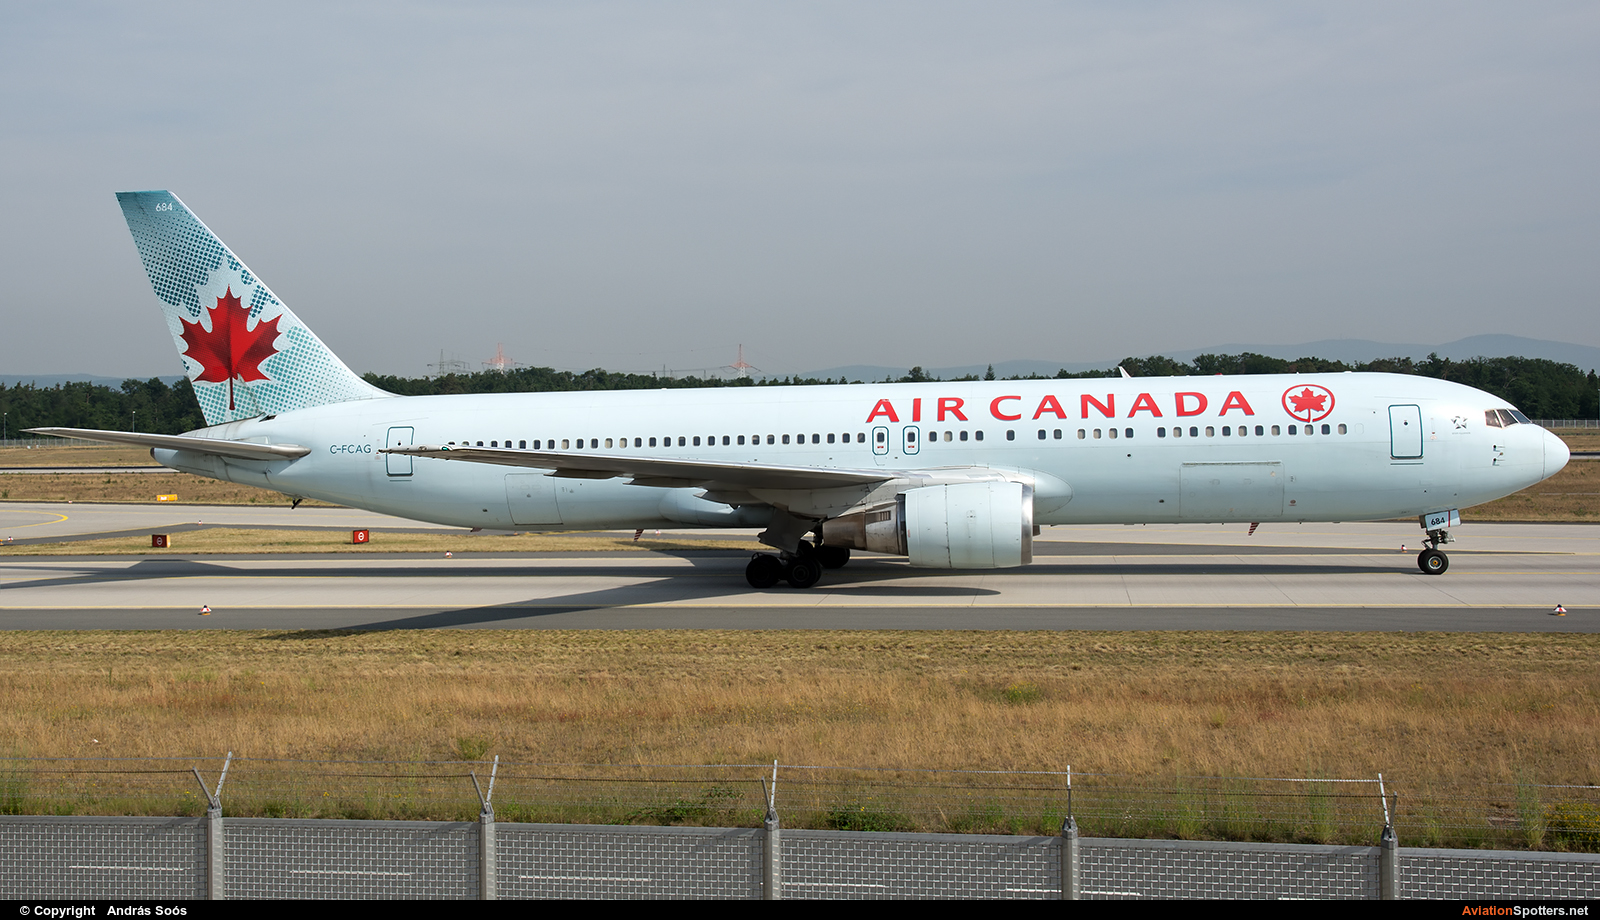 Air Canada  -  767-300ER  (C-FCAG) By András Soós (sas1965)